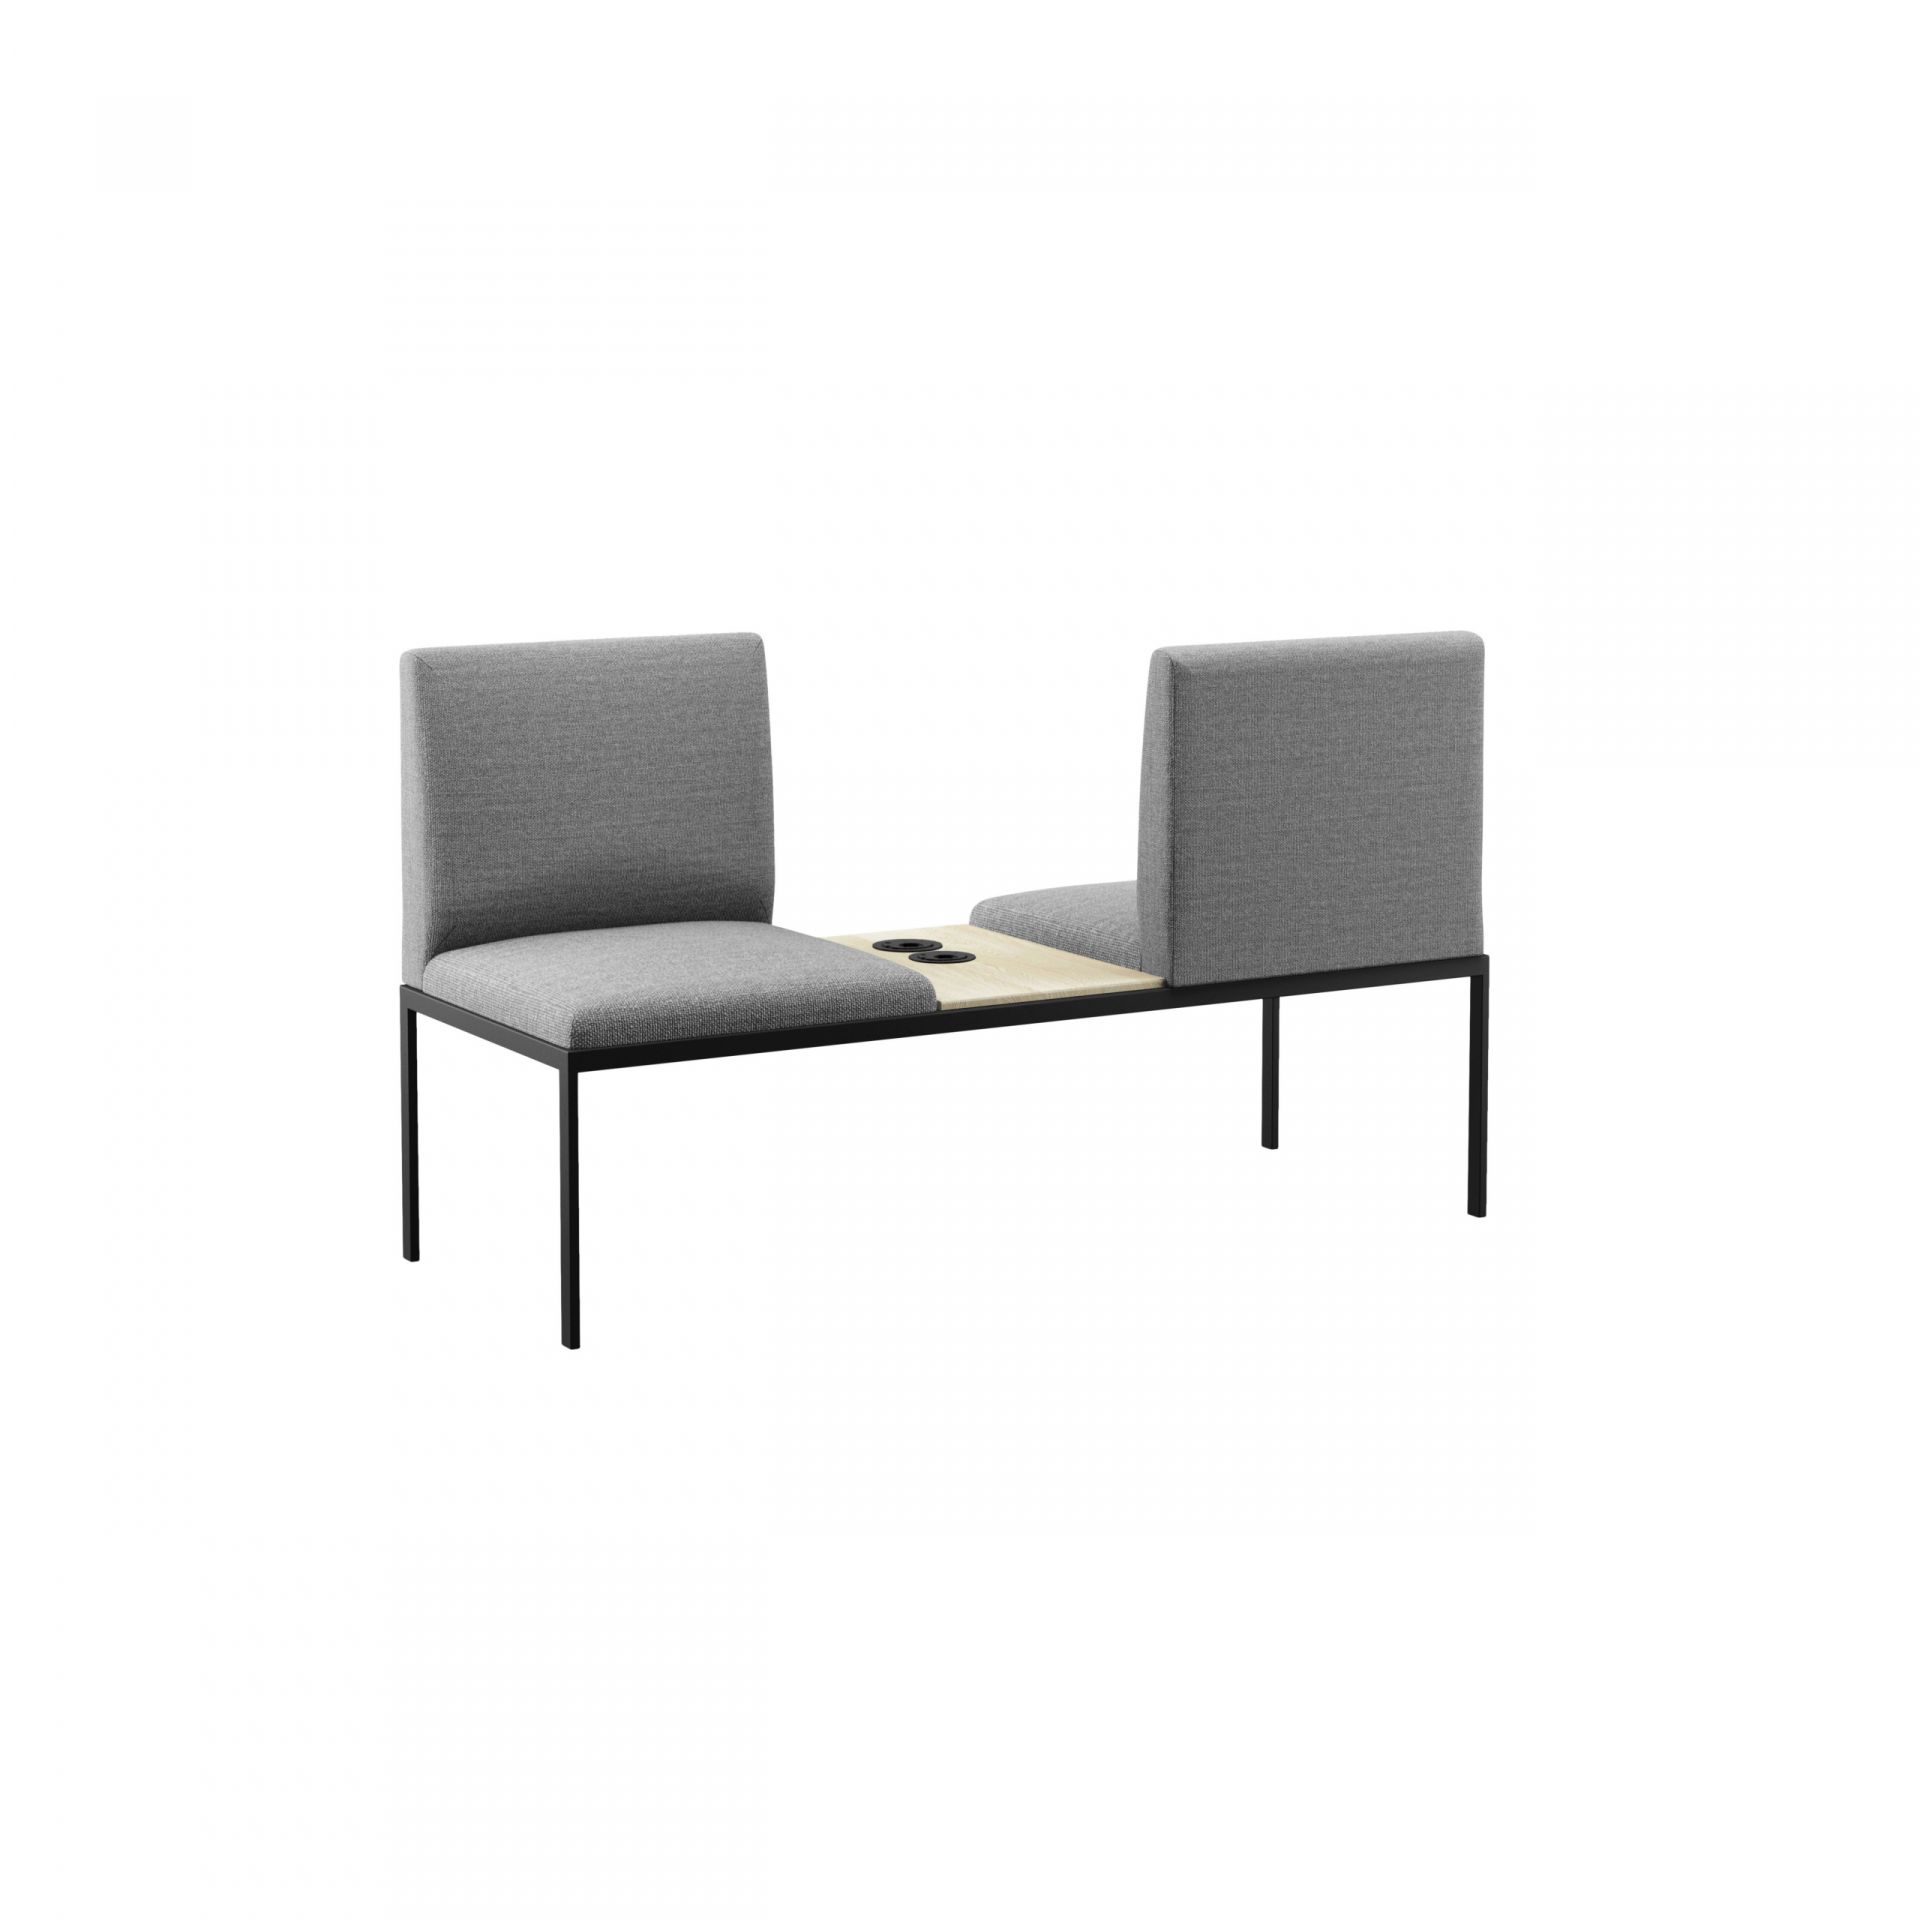 Create Seating Byggbara moduler: sittmöbler, förvaring och rum-i rum produktbild 4